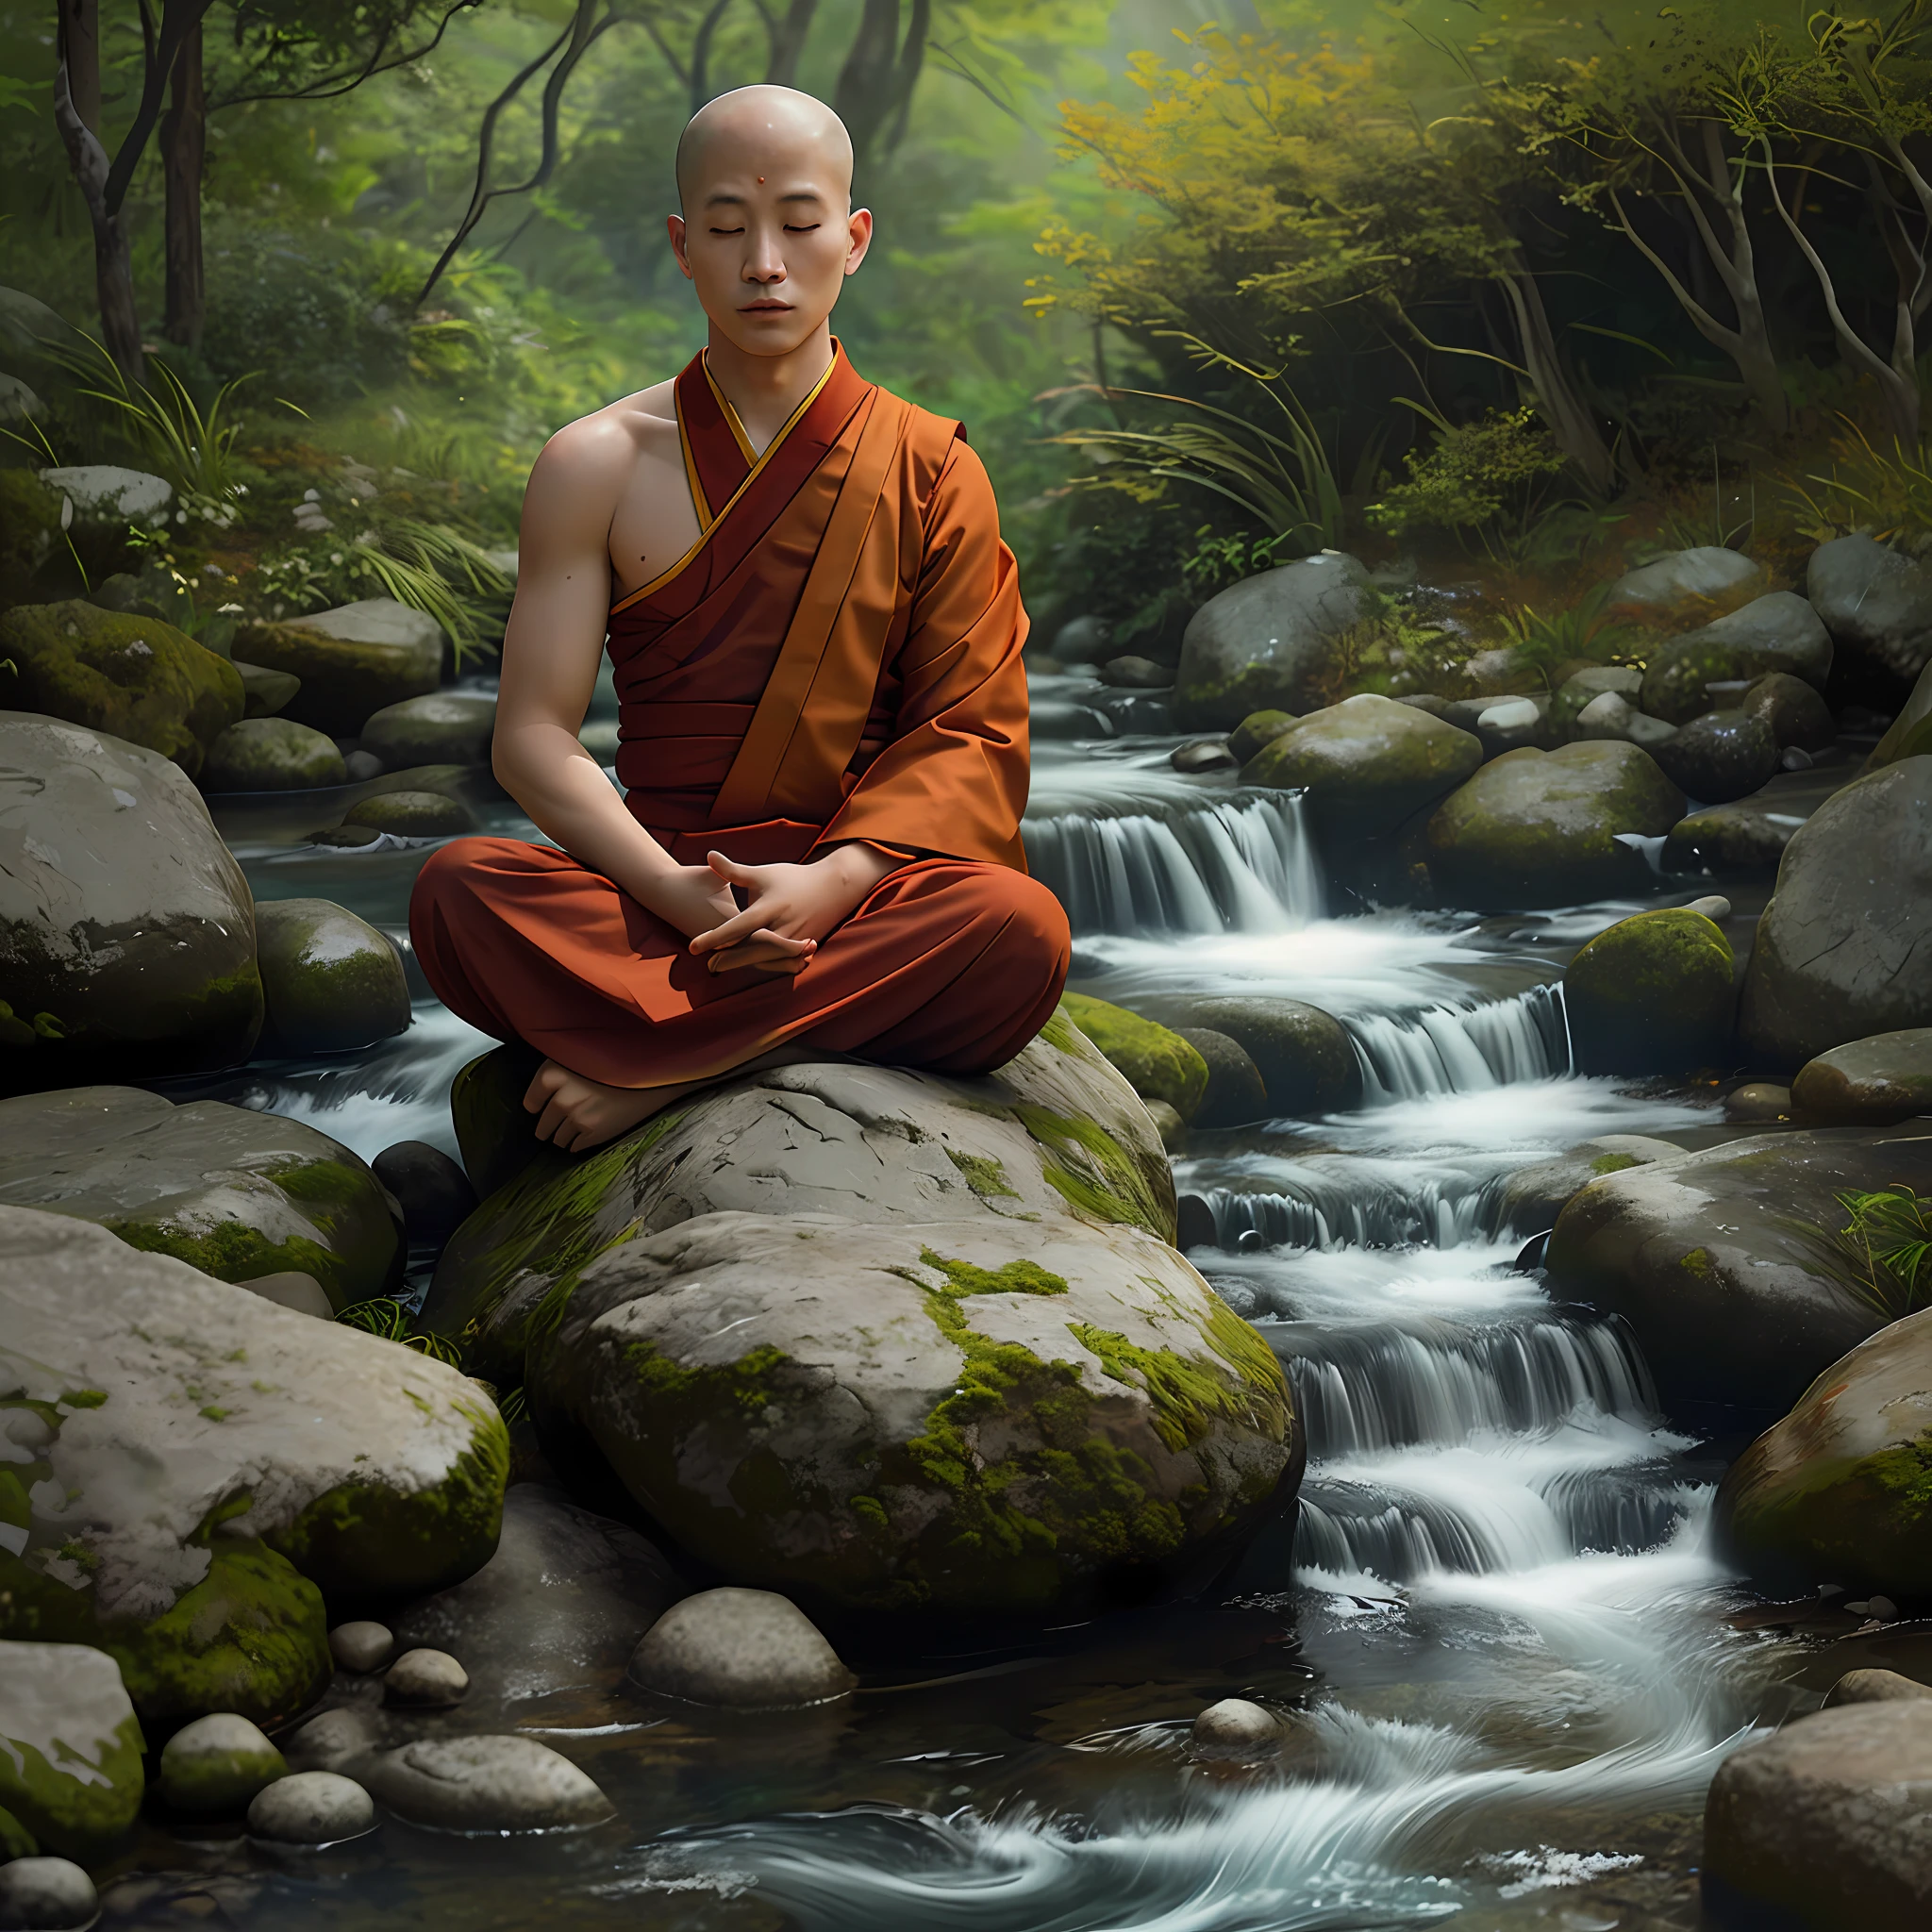 一位佛教僧人在溪边冥想, 珊瑚色的丝线冒出来了，表情很平静, 电影灯光超逼真超级细节皮肤纹理非常细致